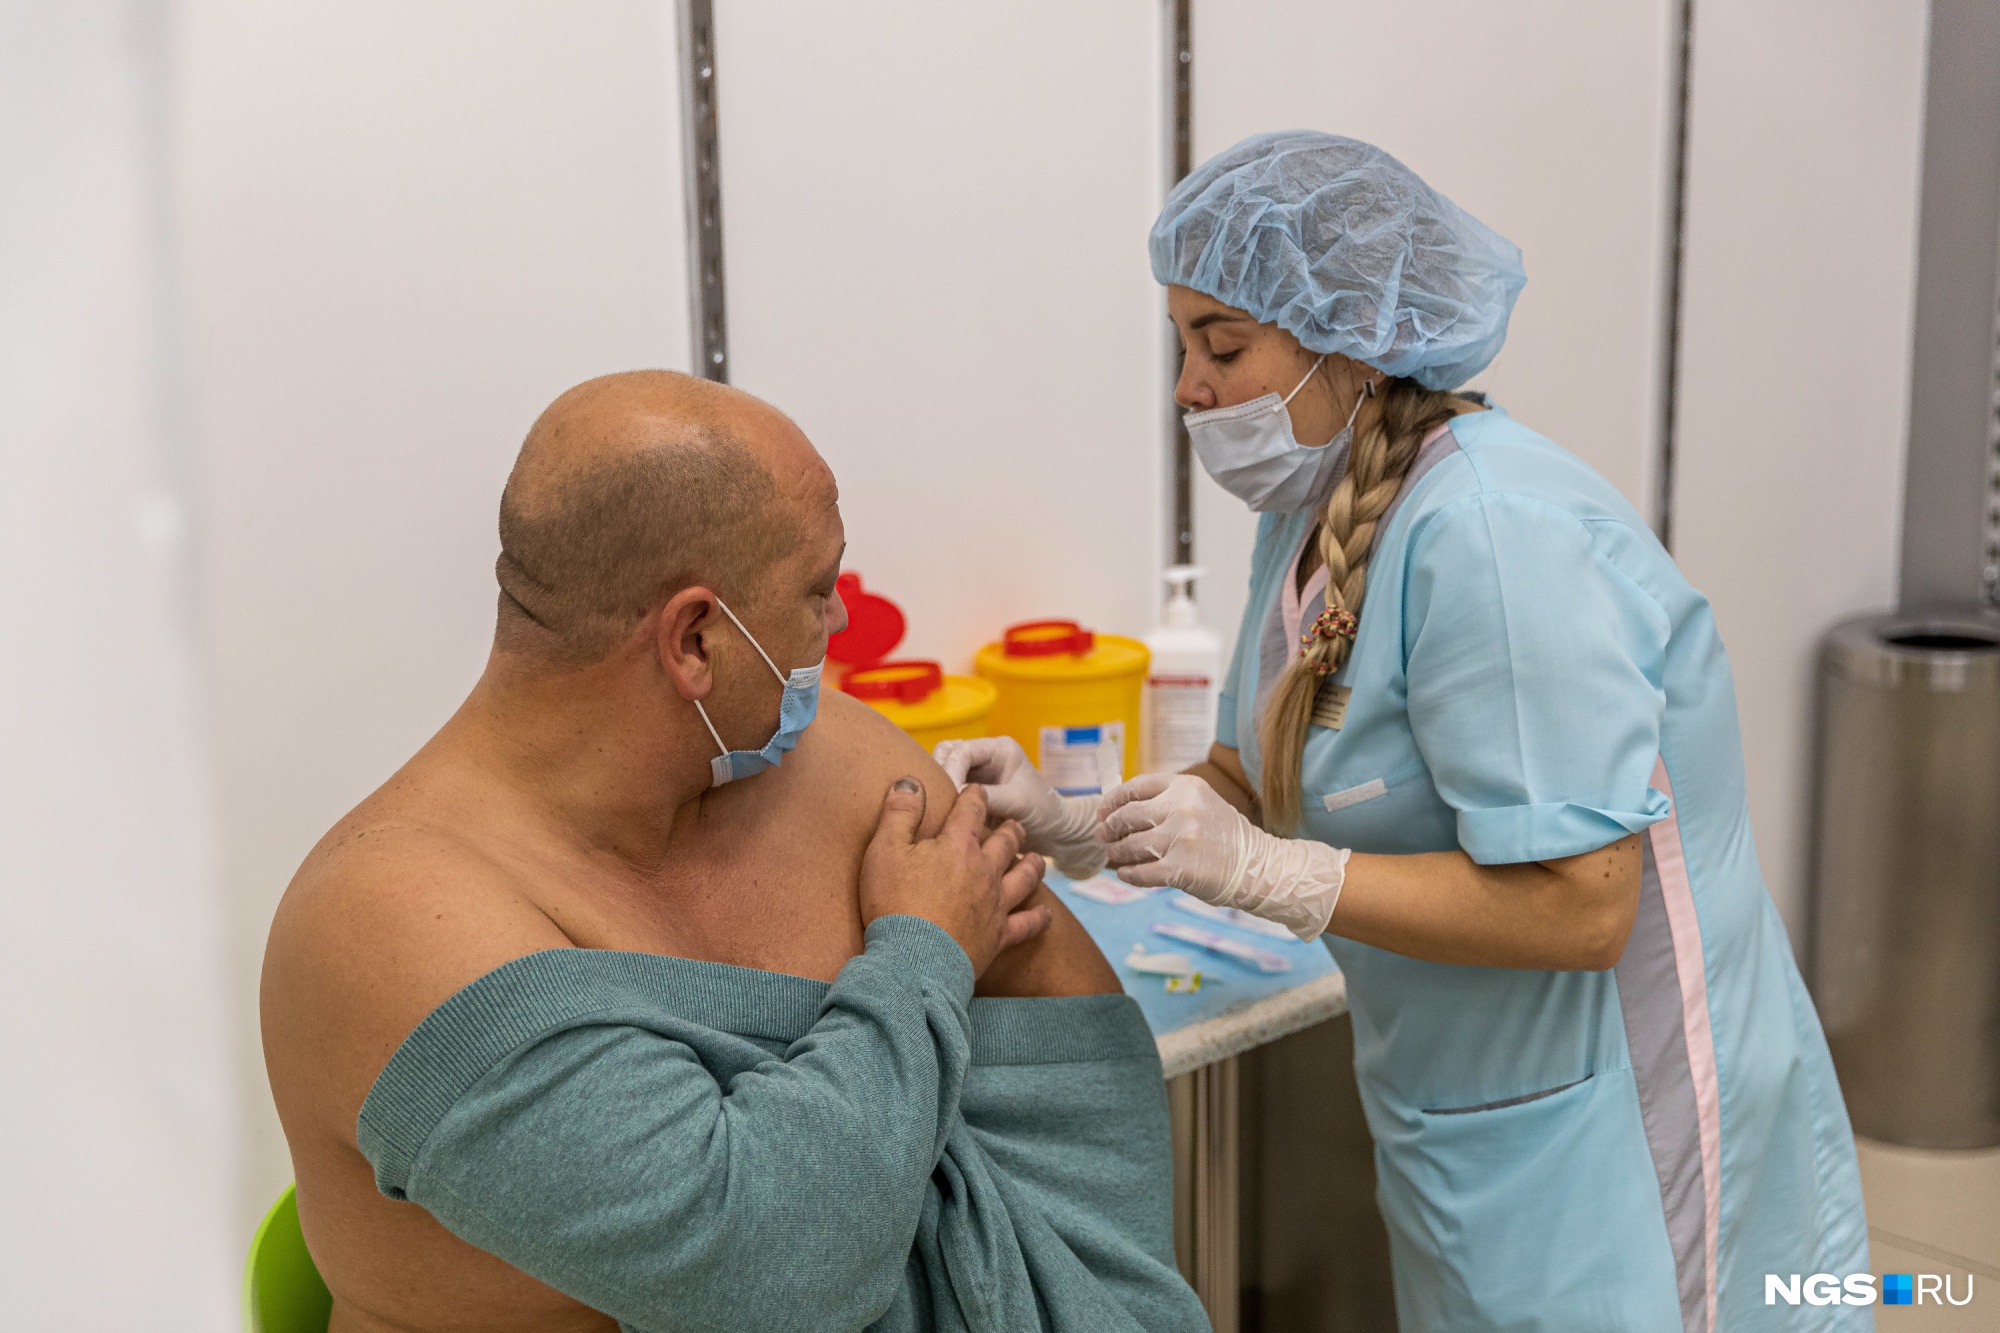 В России одобрены четыре вакцины от ковида. Чем они отличаются? Объясняем в одной картинке